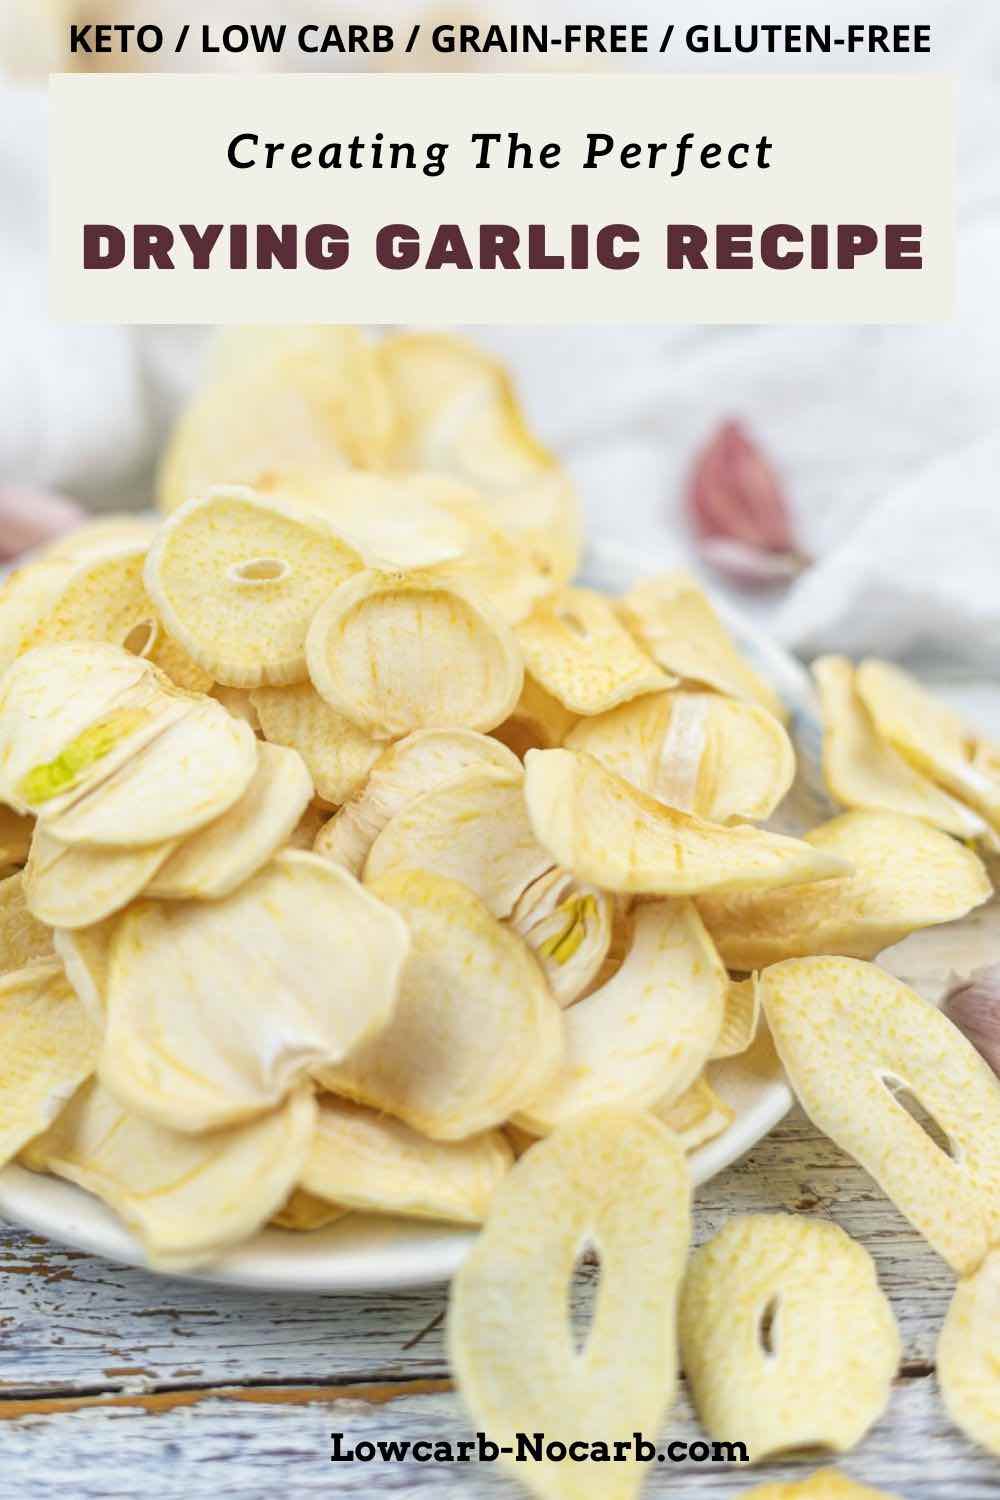 Drying garlic recipe.